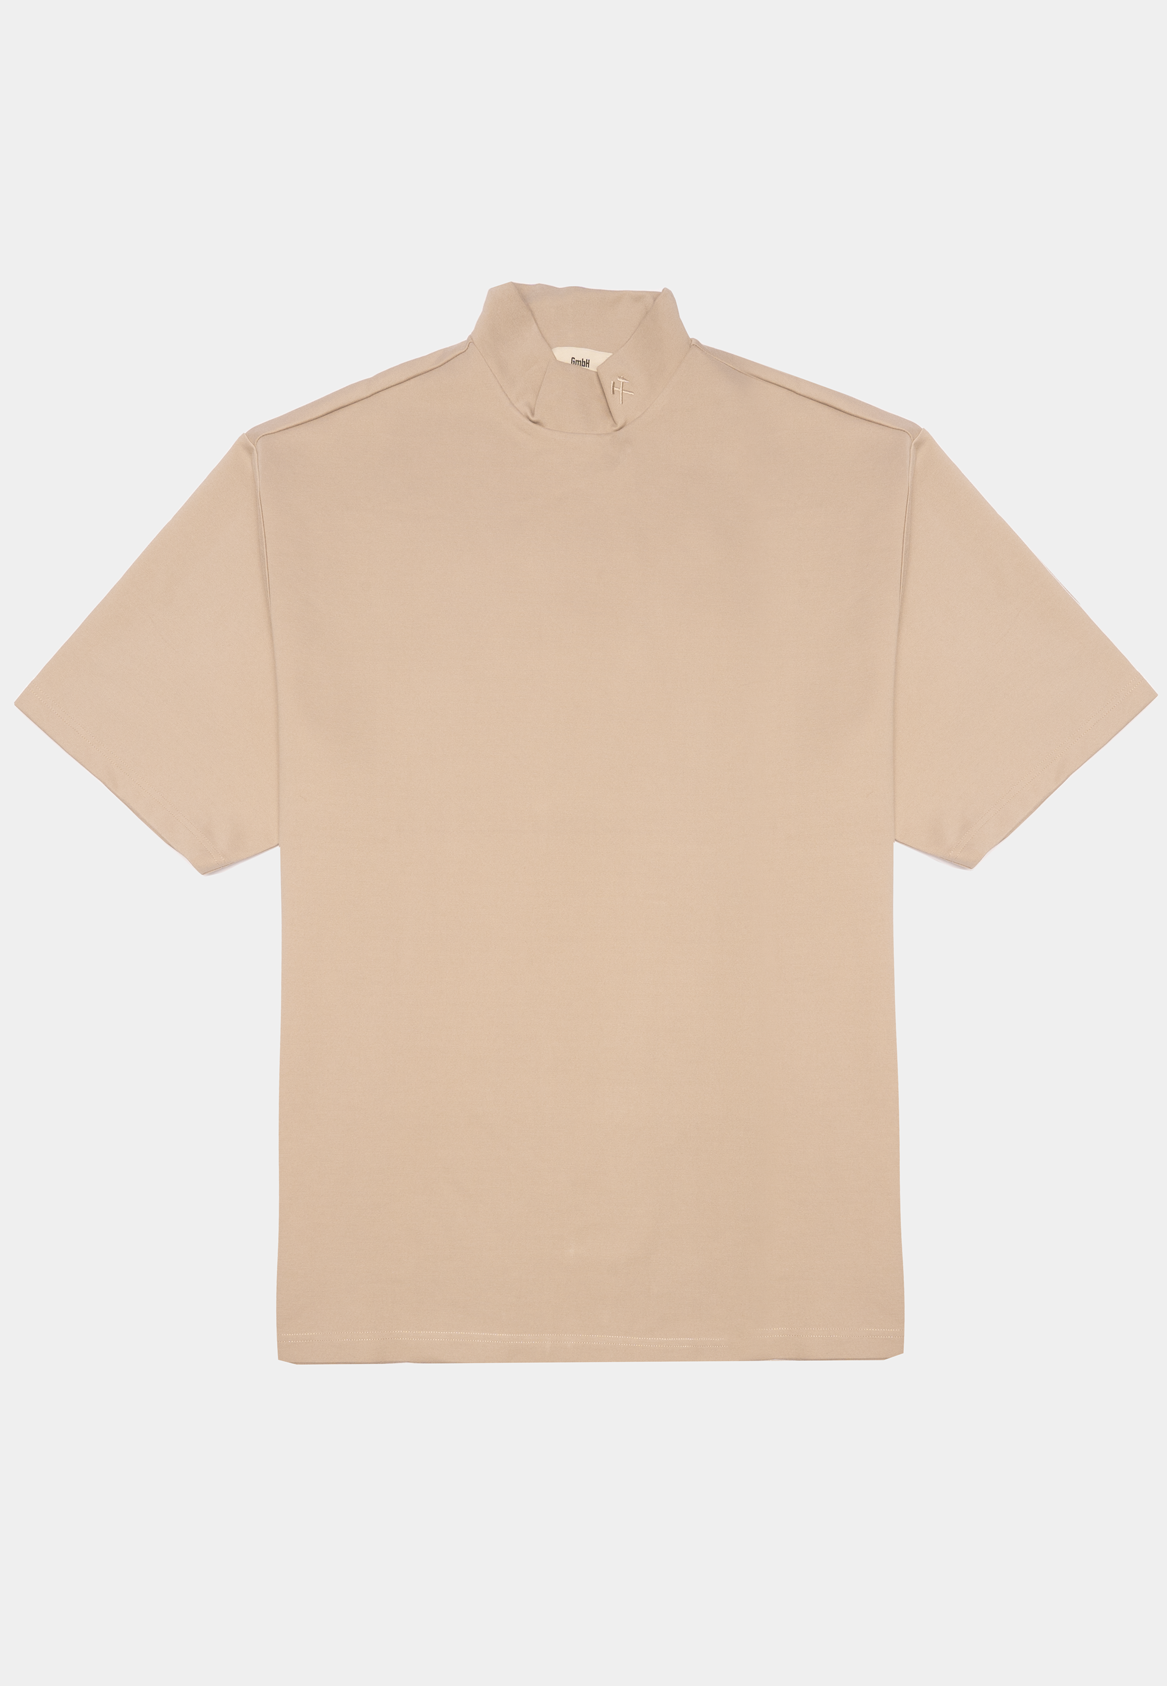 Gmbh T Shirt W Mandarin Collar Interlock Leaw Biege